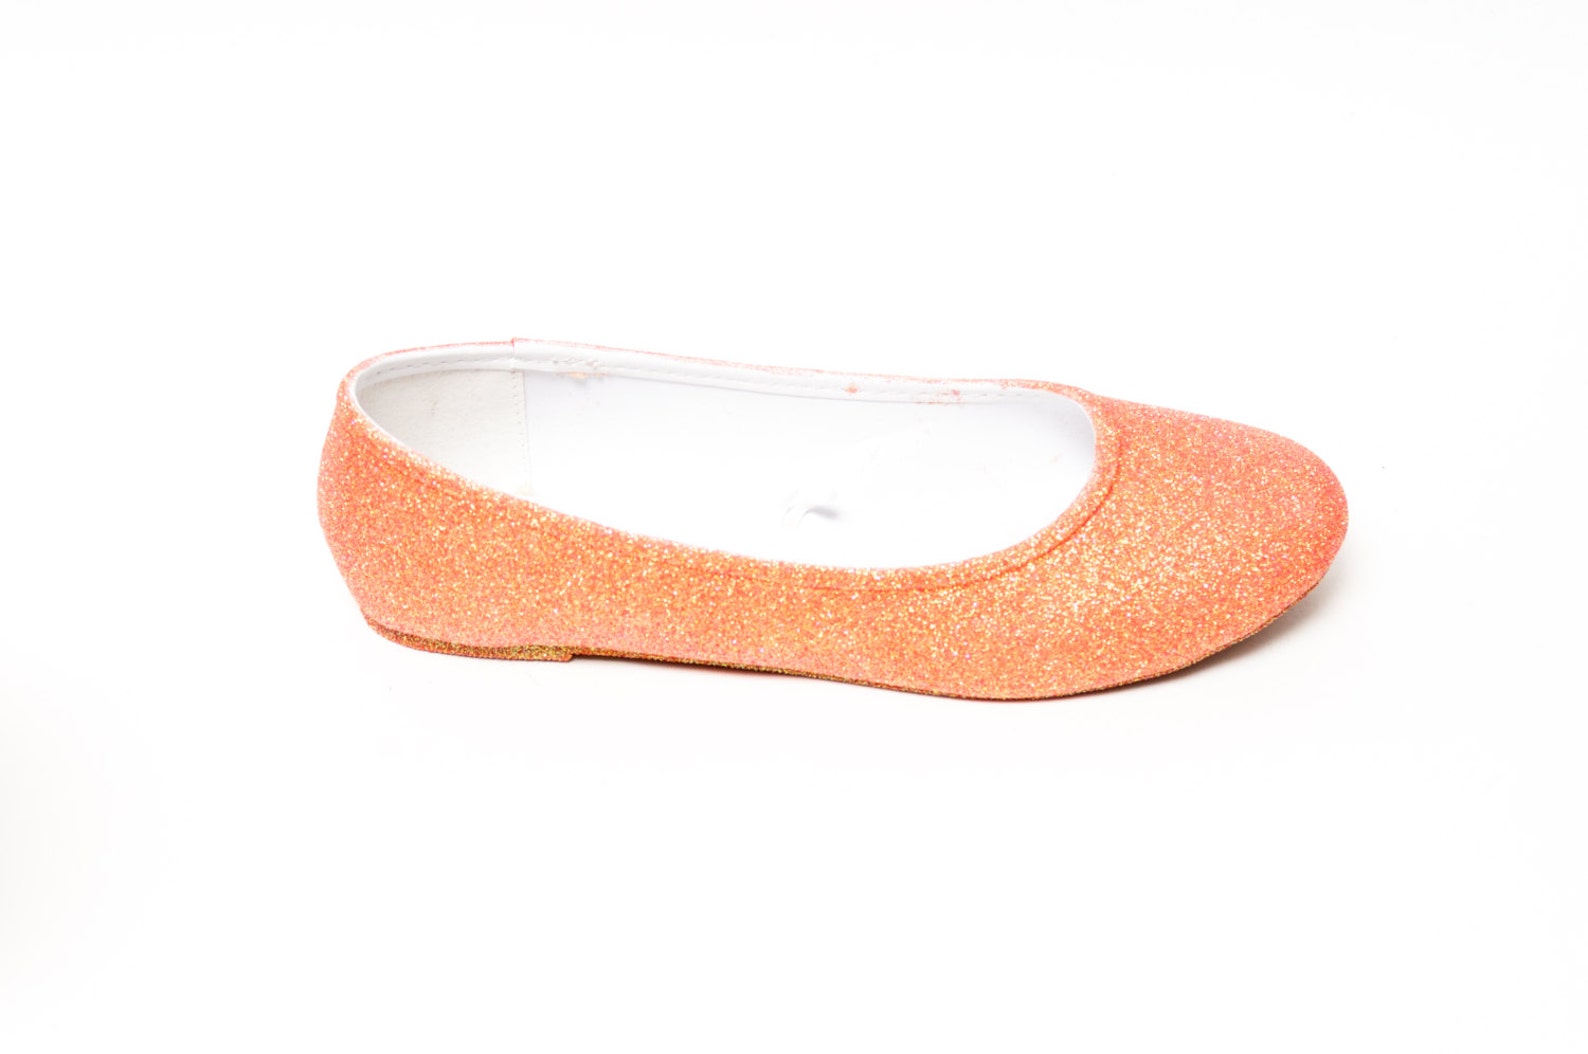 glitter | princess pumps melon orange ballet flat casual shoes